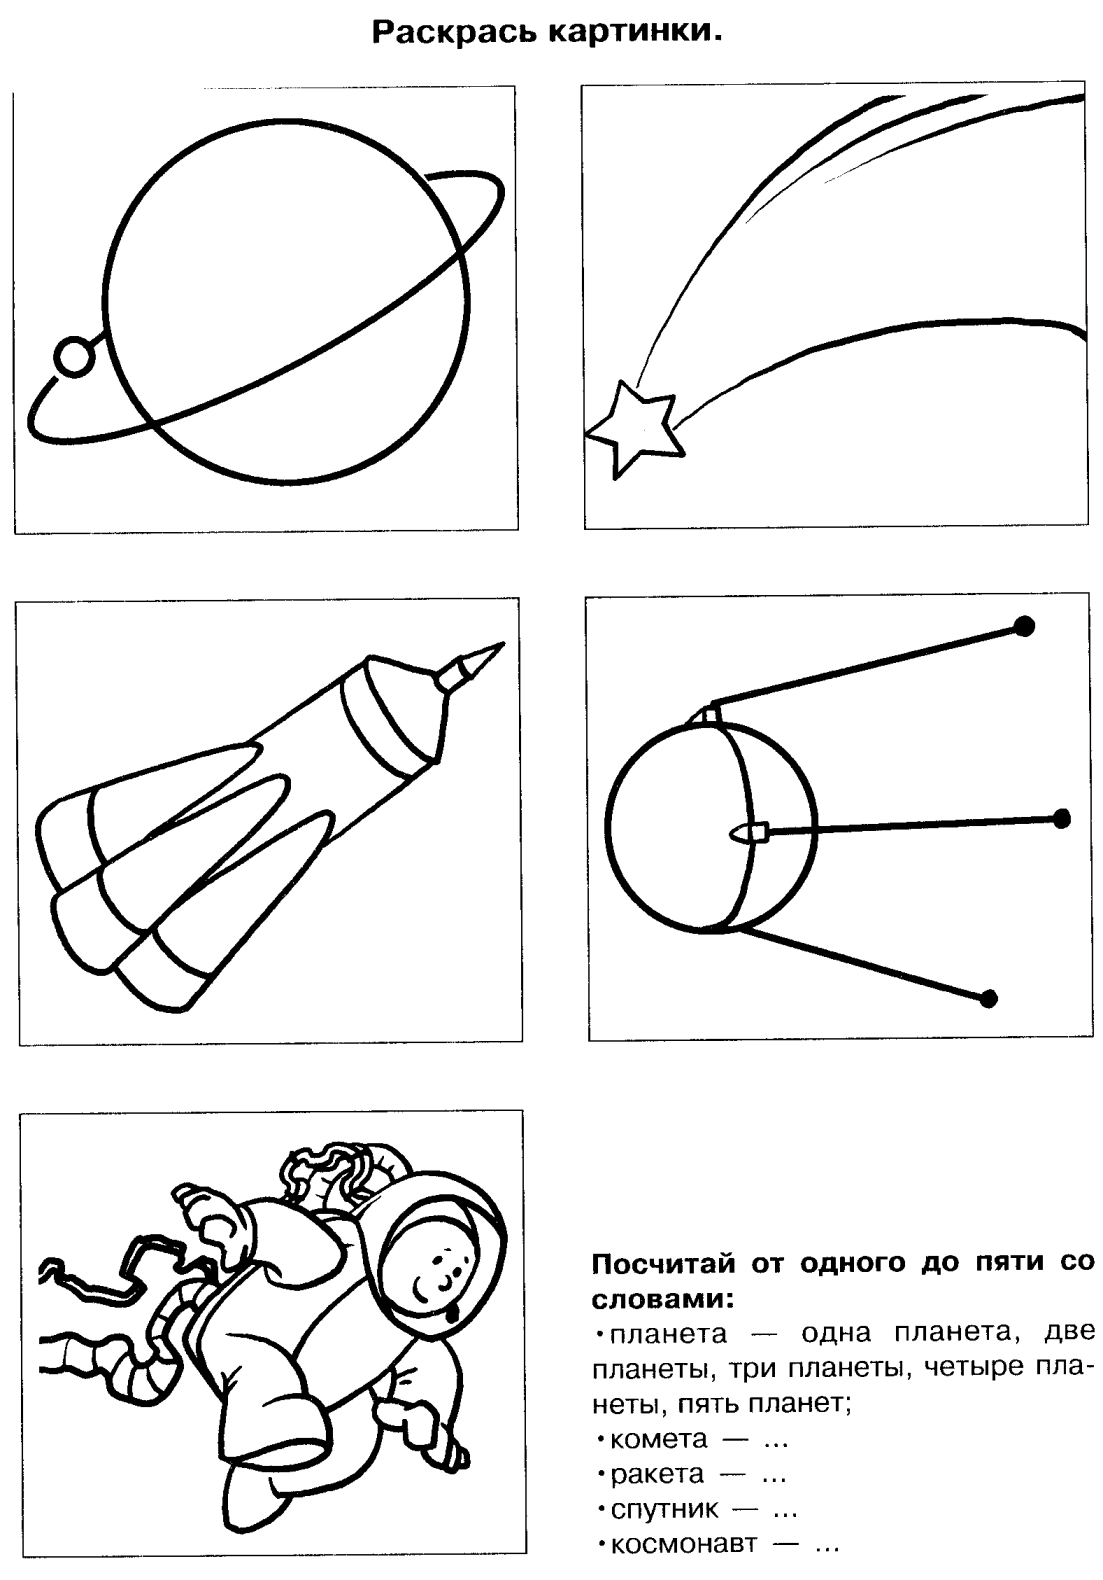 Задания для детей на тему космос. Тема космос задания логопеда. Лексическая тема космос. Задания для детей по теме космос.